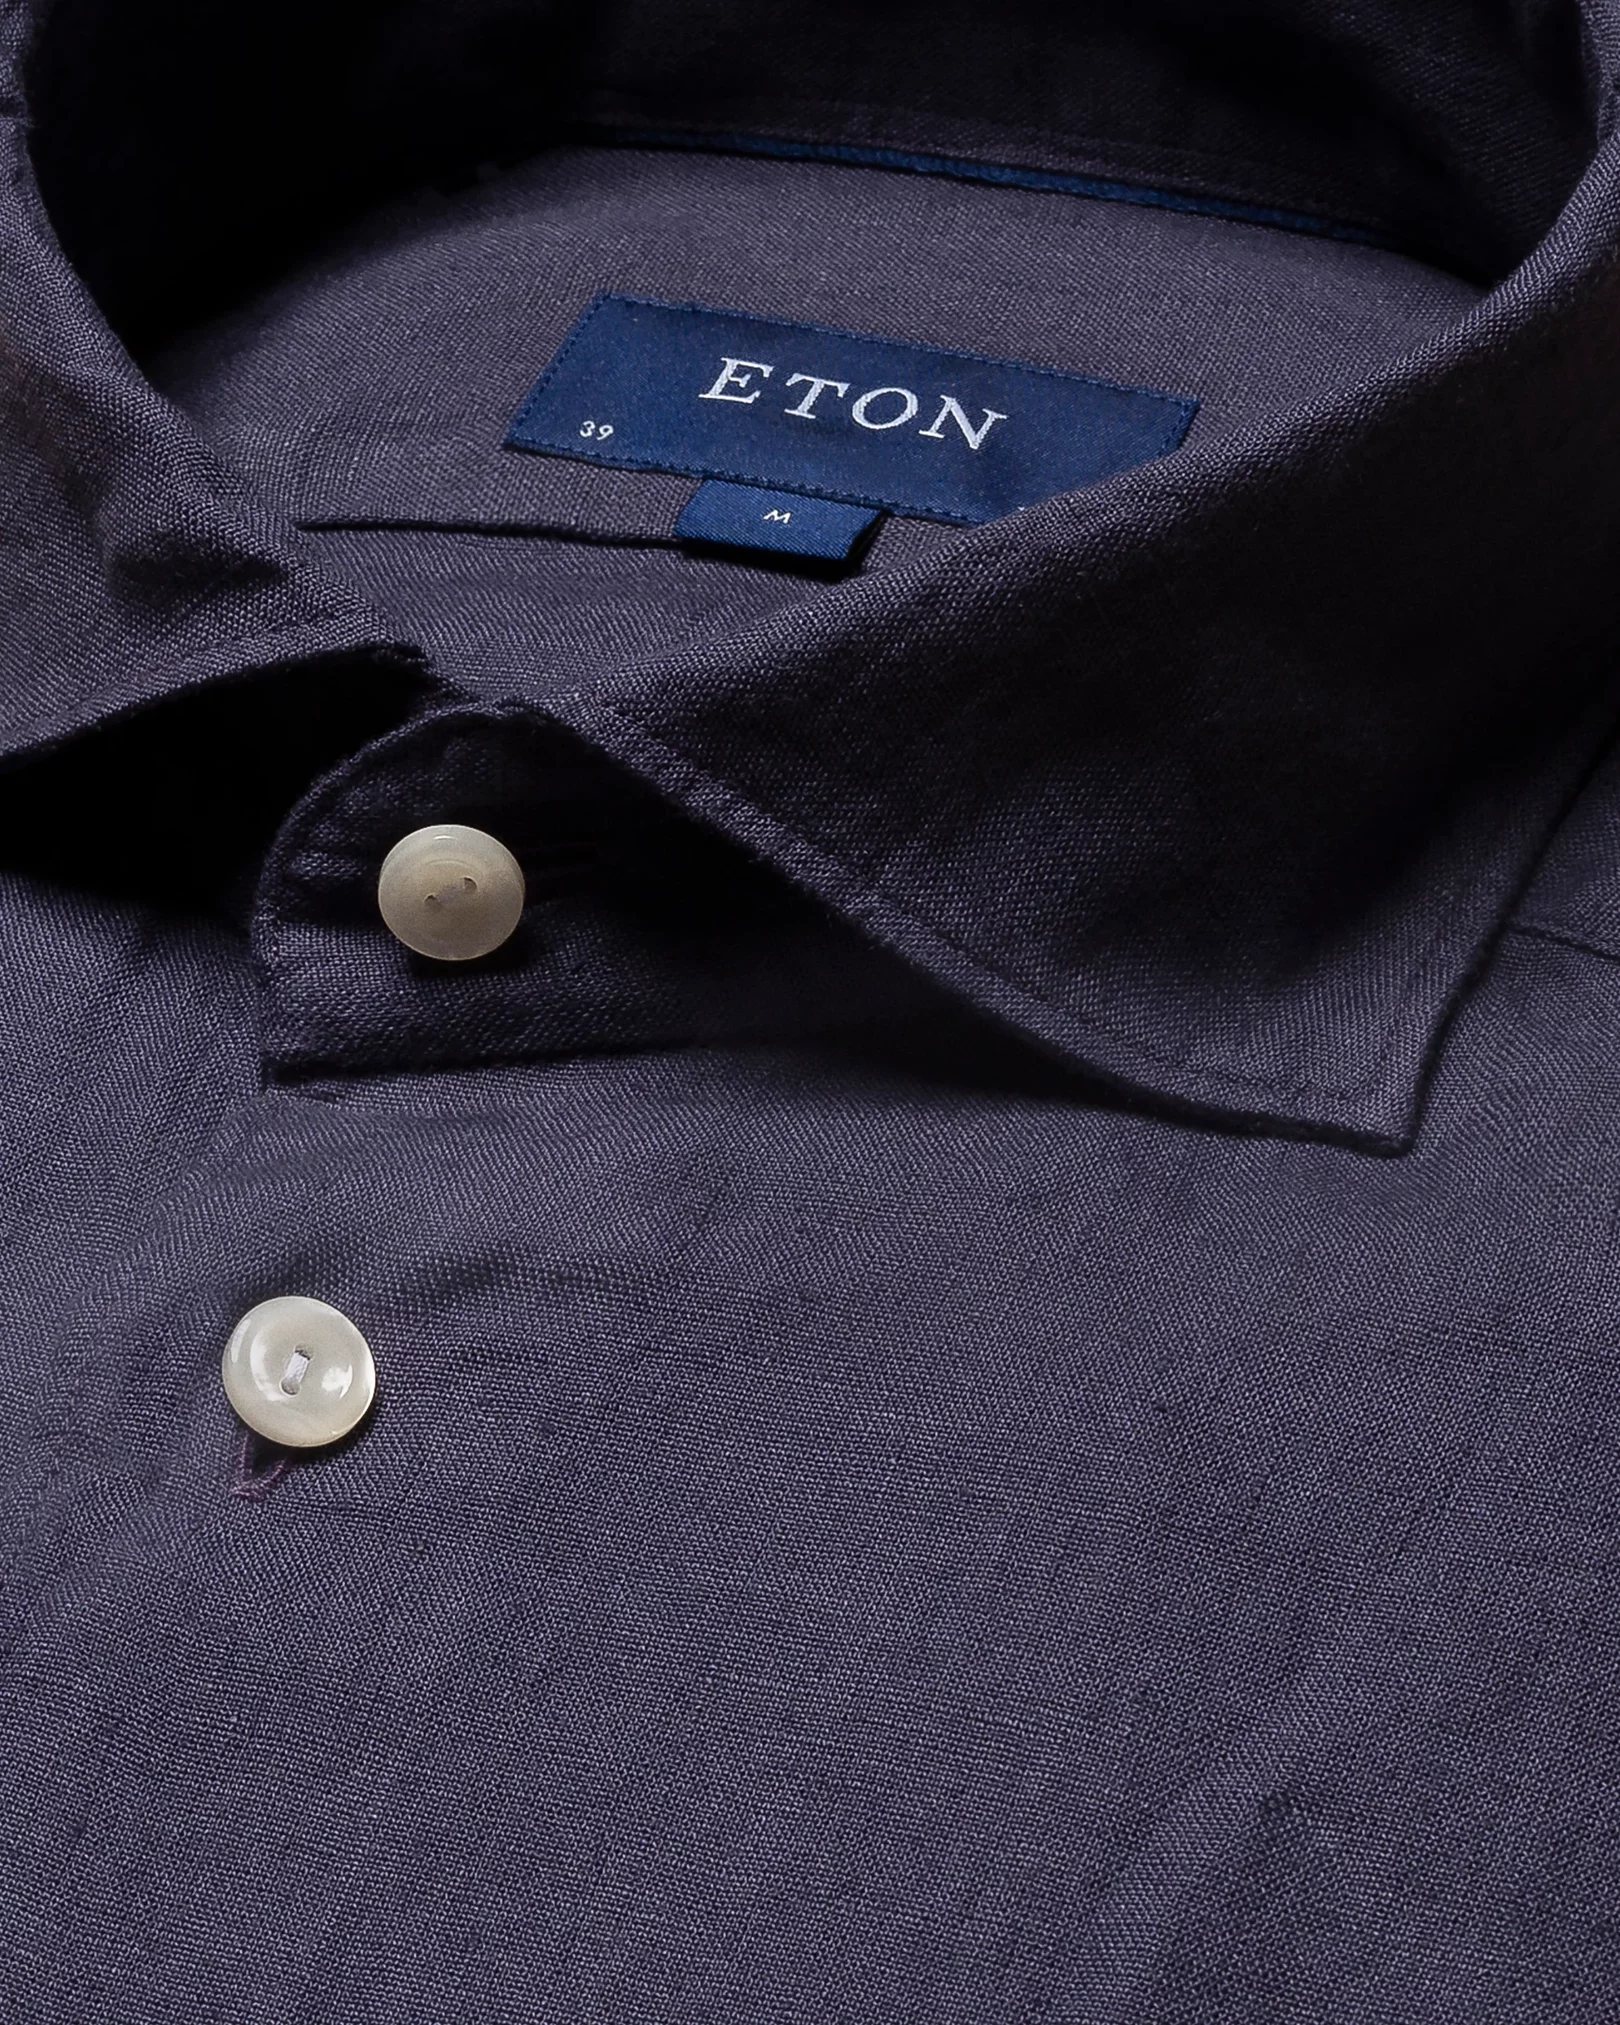 Eton - navy blue linen wide spread